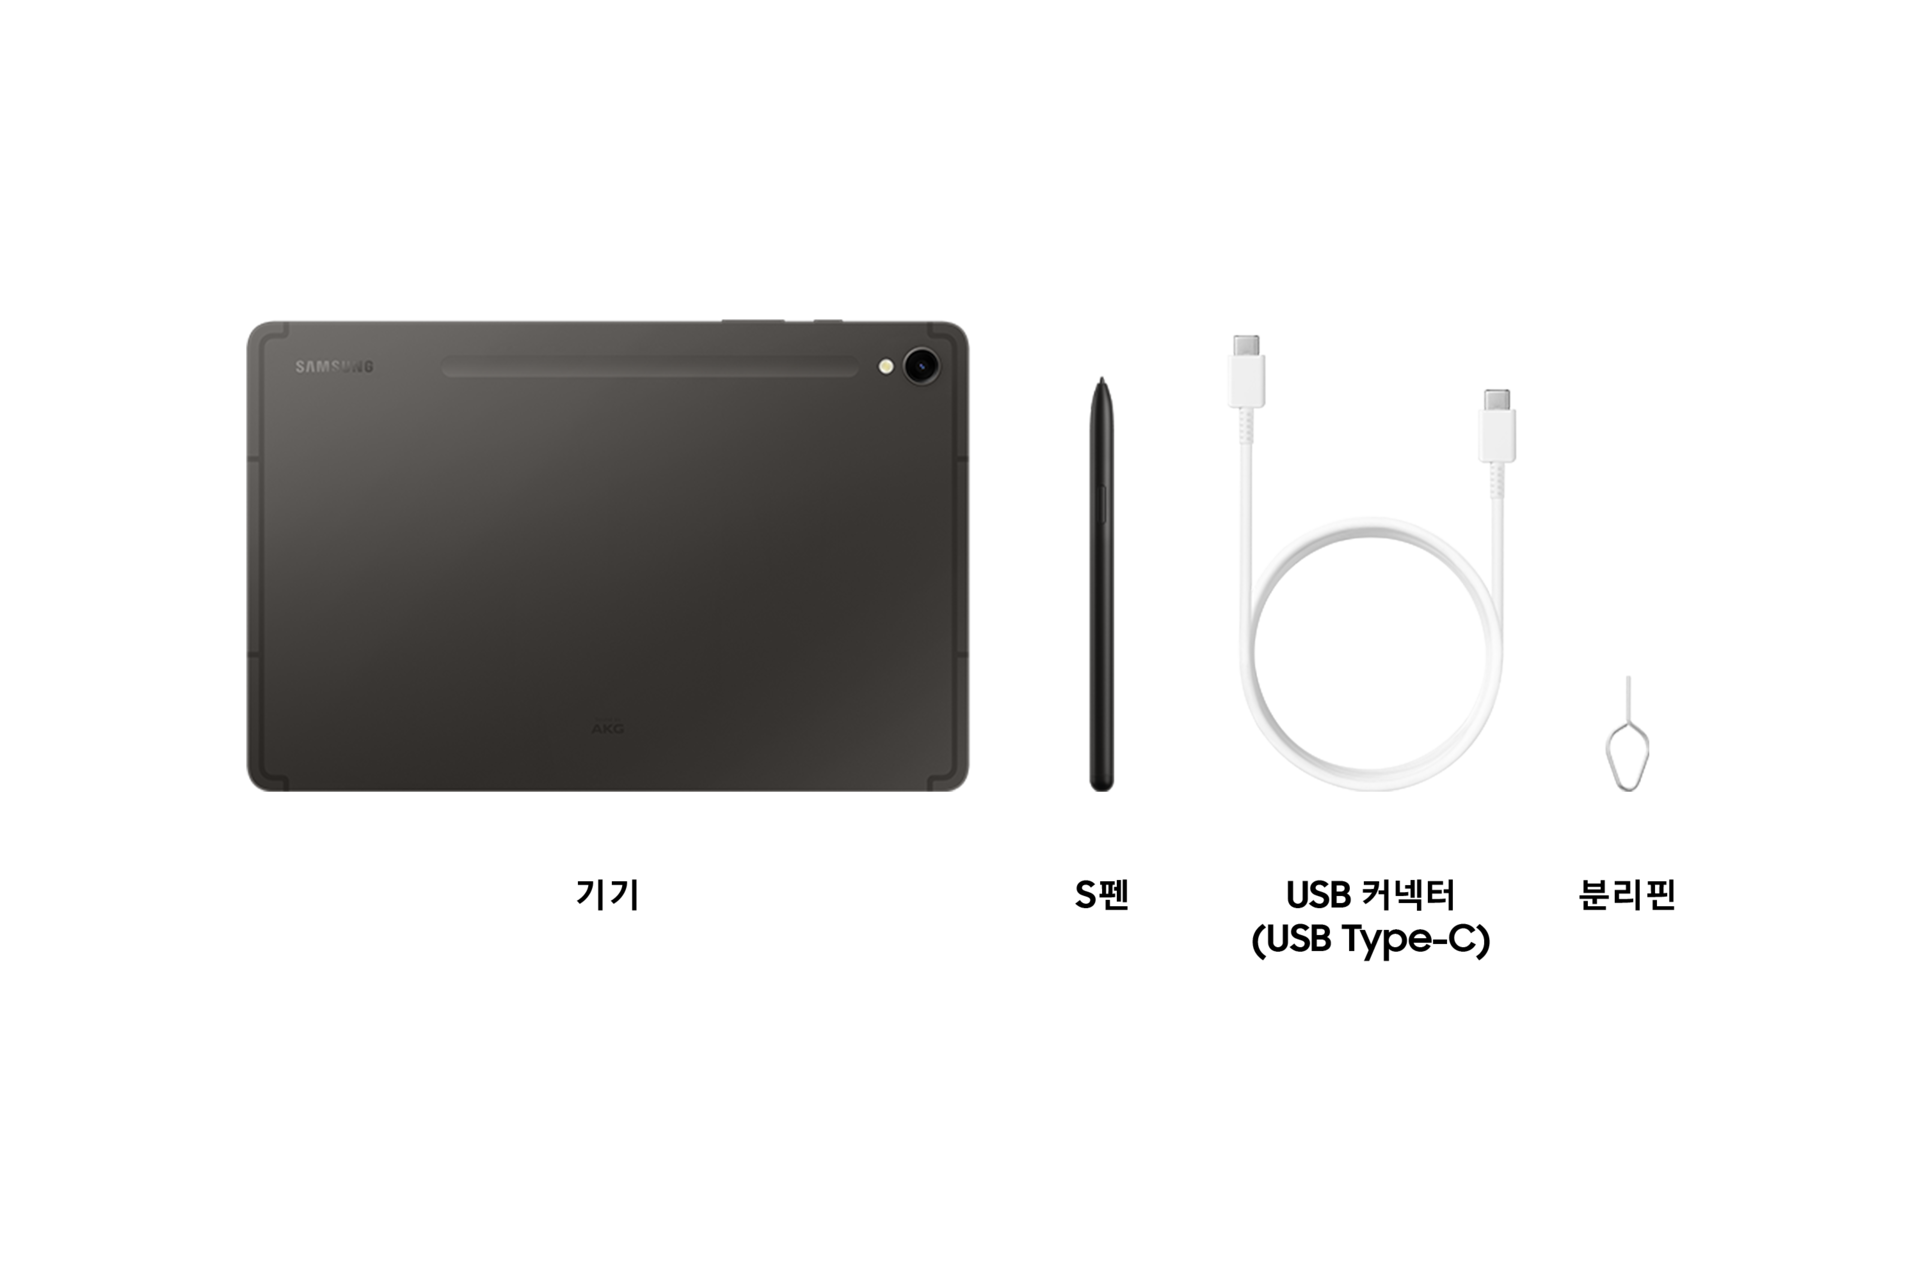 갤럭시 탭 S9 (Wi-Fi) 그라파이트 구성품